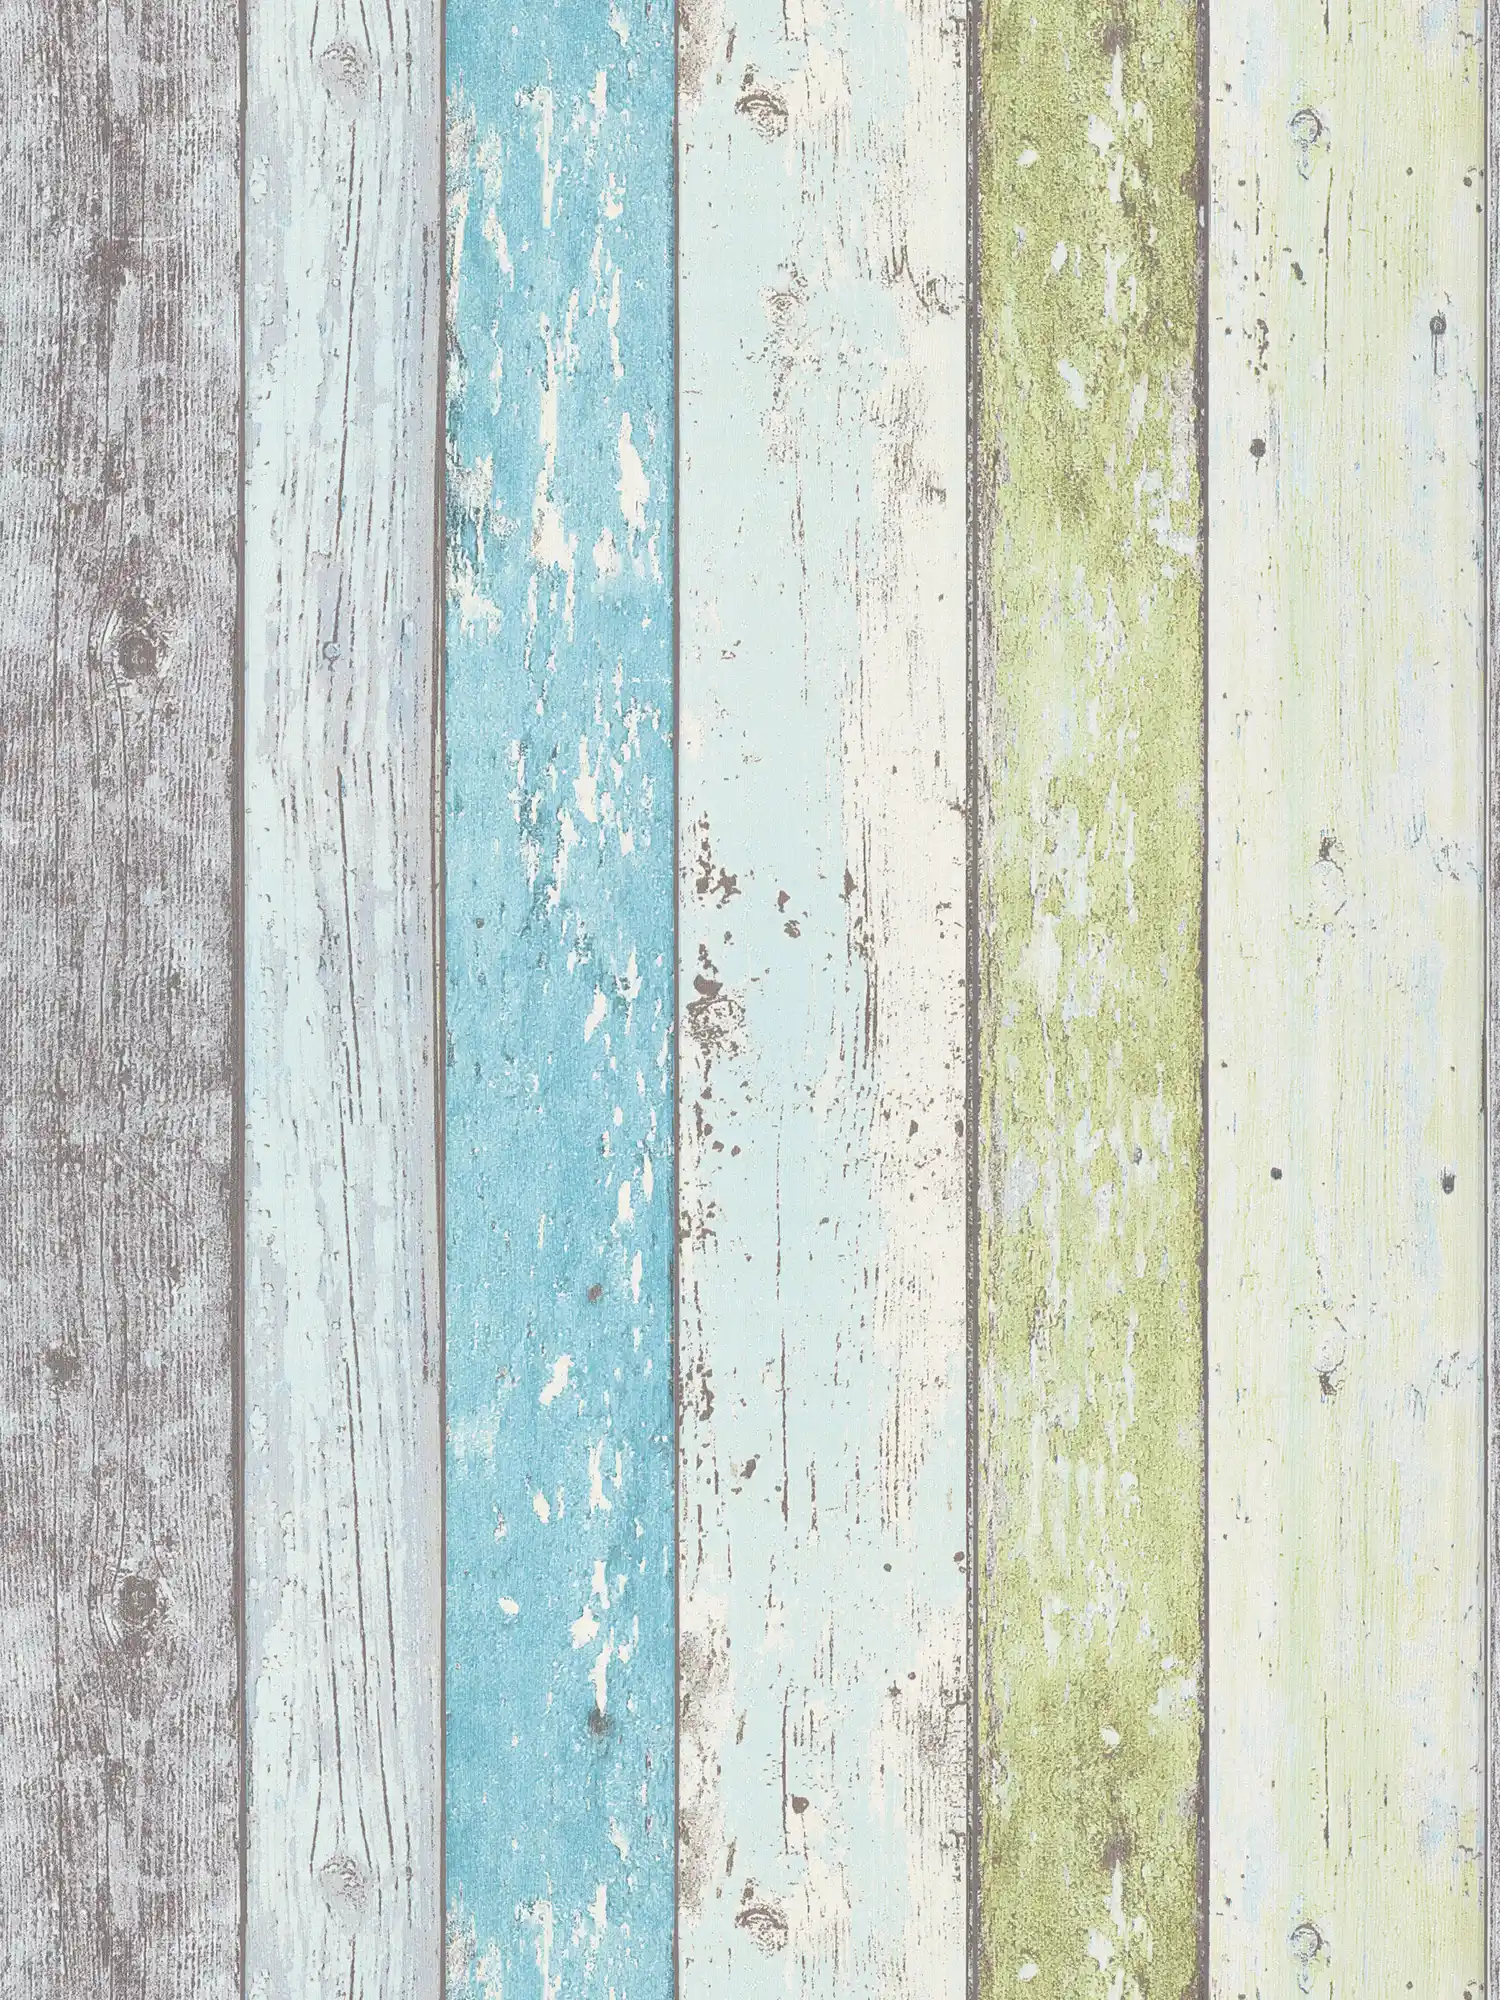 Houten behang met used look voor vintage & landelijke stijl - blauw, groen, wit
